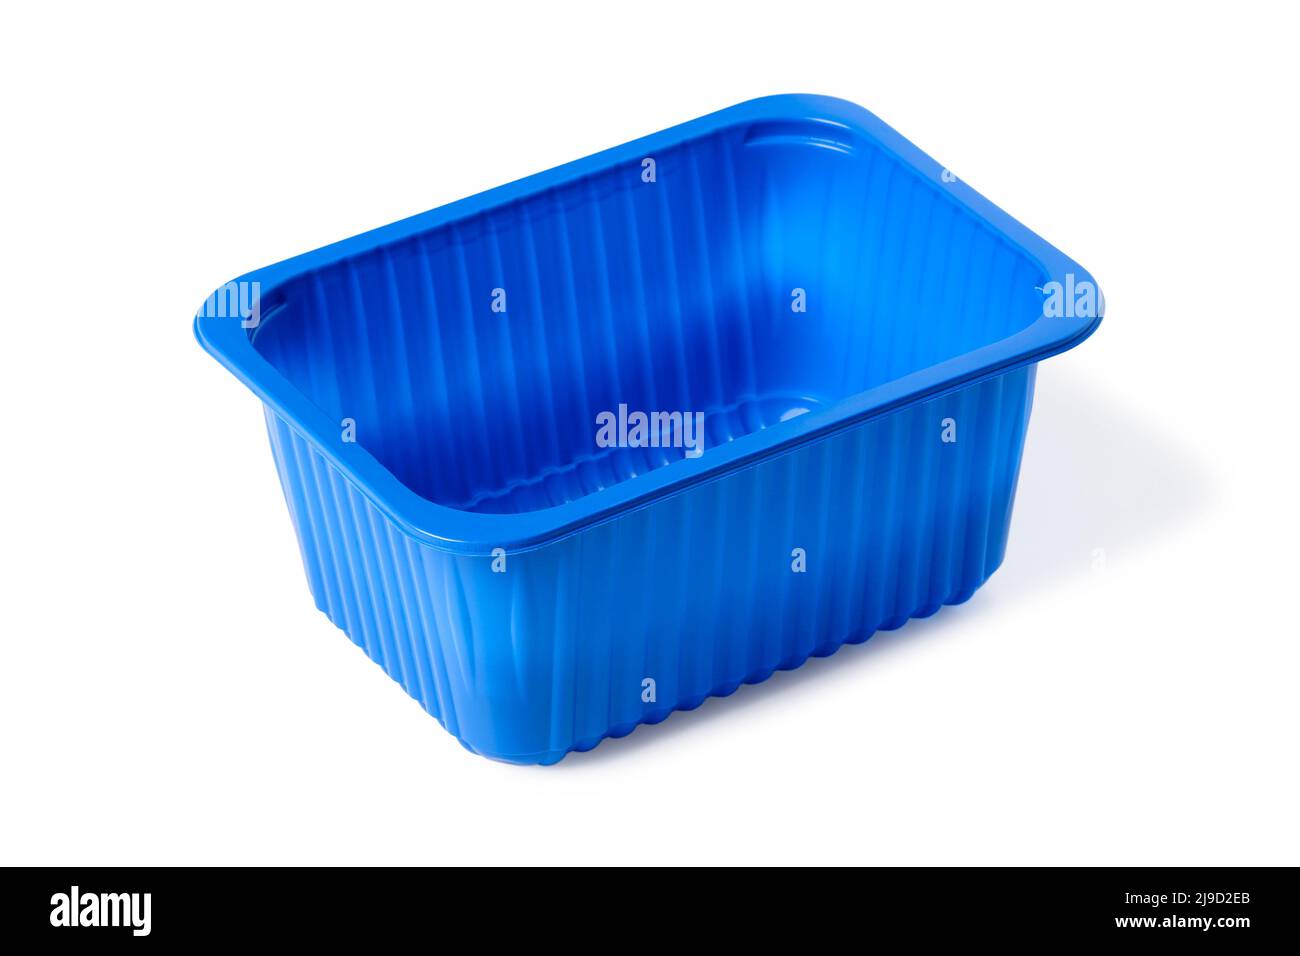 Recipiente de plástico azul para alimentos aislado sobre fondo blanco Foto de stock